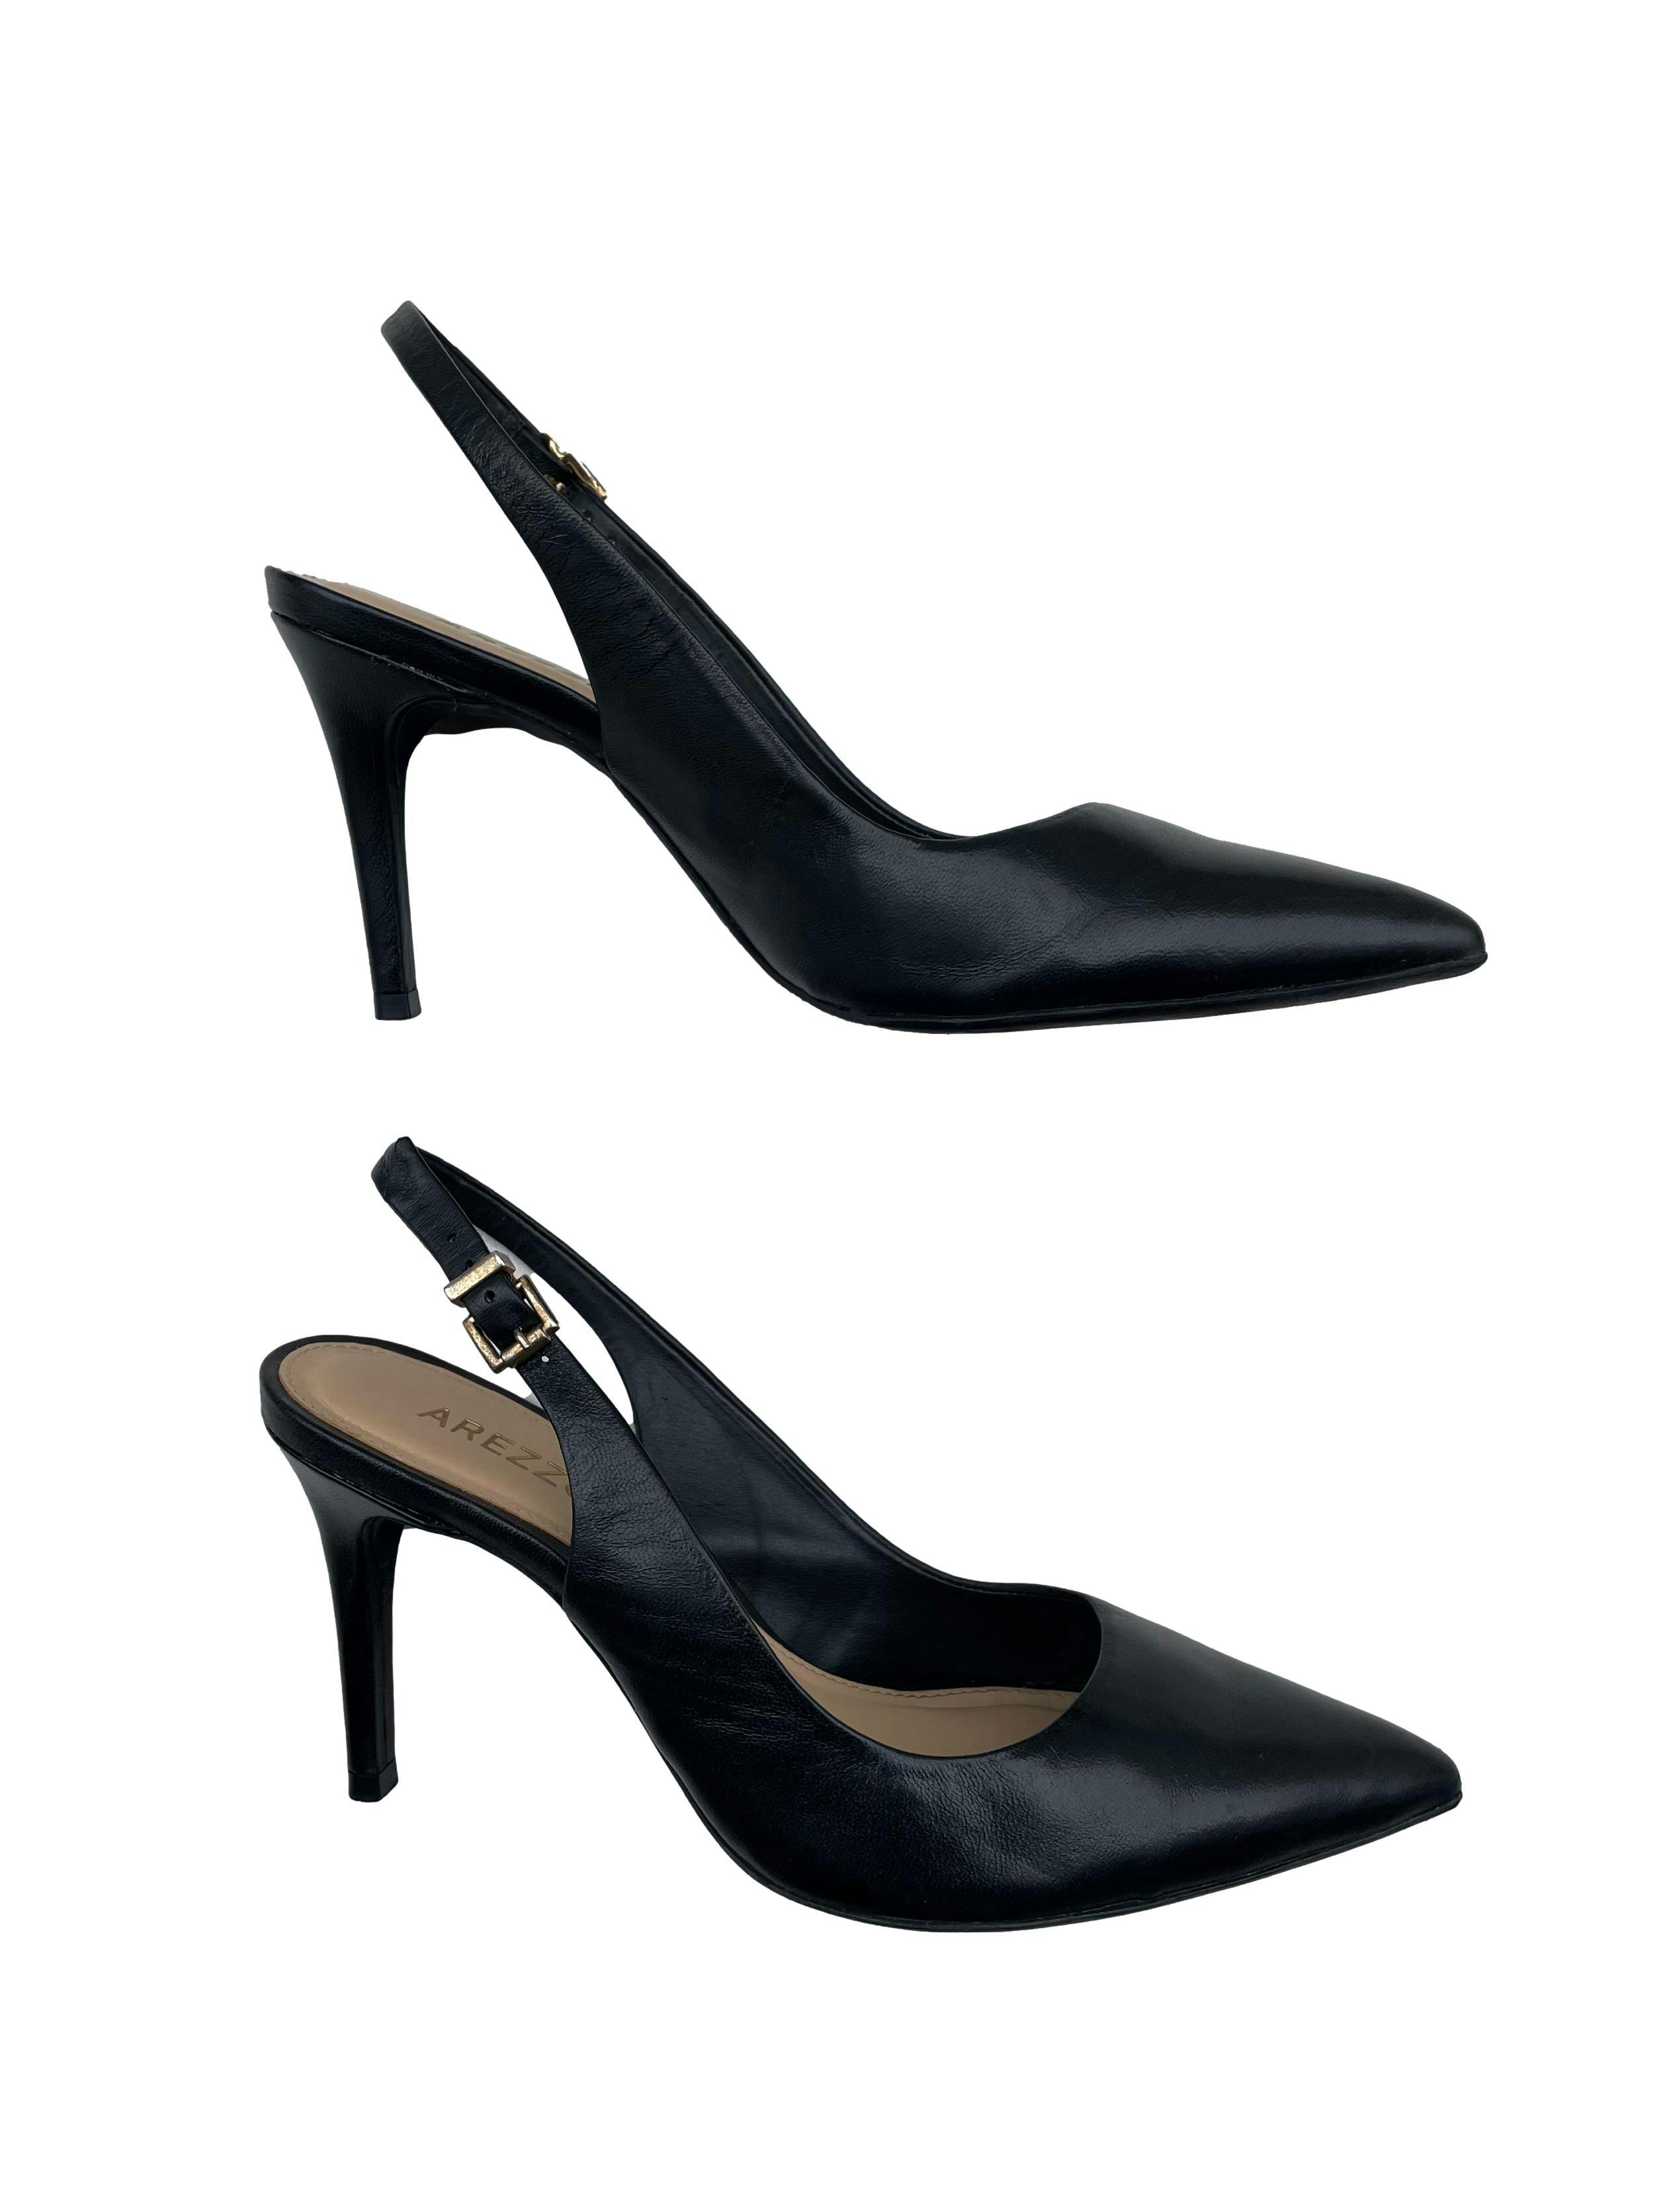 Zapatos Arezzo de cuero negro, modelo en punta y correa al tobillo, taco 9cm. Estado 9/10. Precio original S/ 300